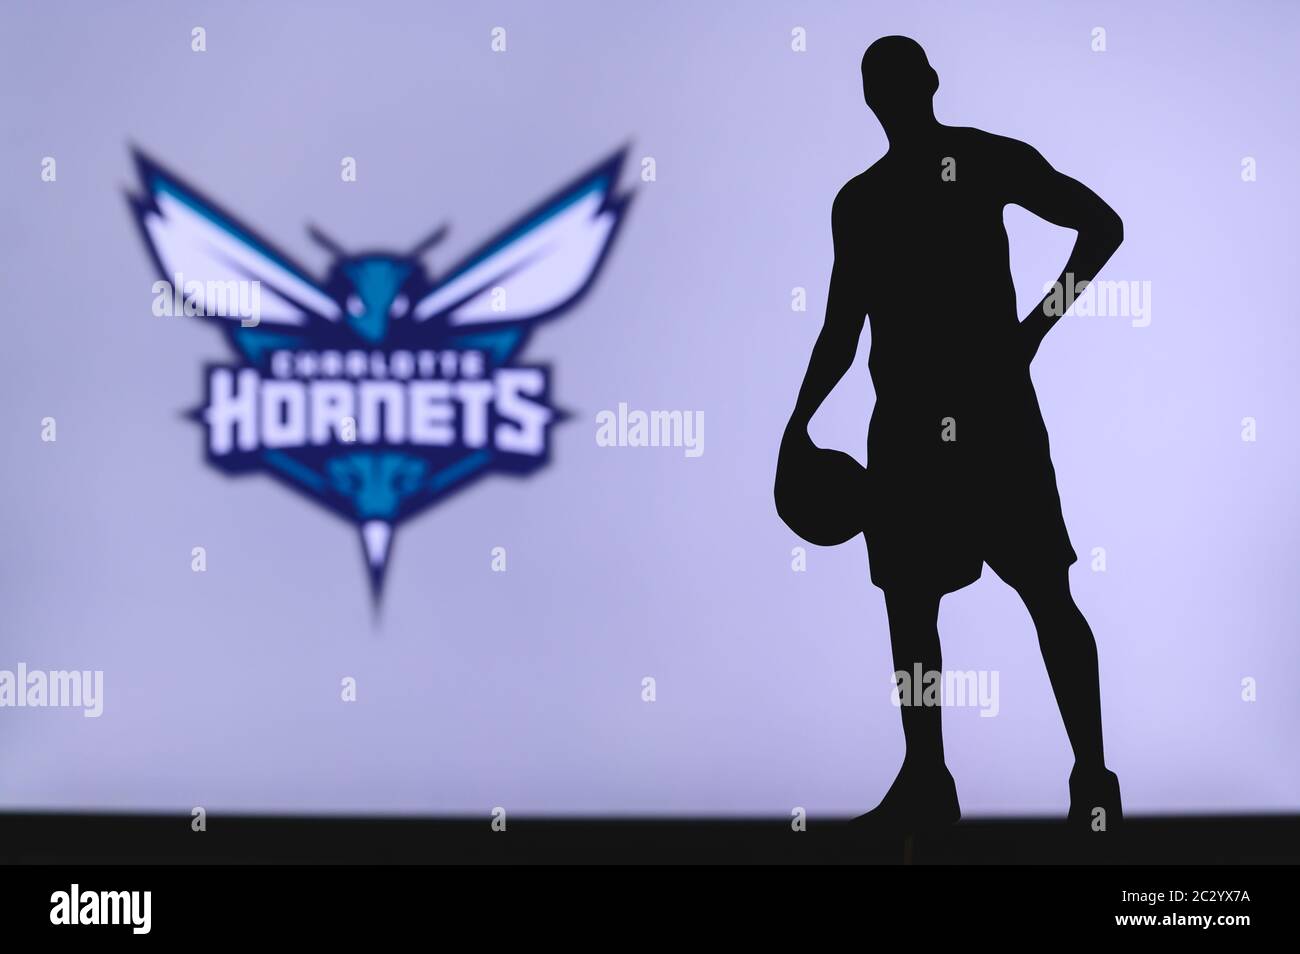 NEW YORK, USA, 18 GIU 2020: Charlotte Hornets logo di club di basket professionale nella lega americana. Silhouette del giocatore di basket in primo piano. SpO Foto Stock